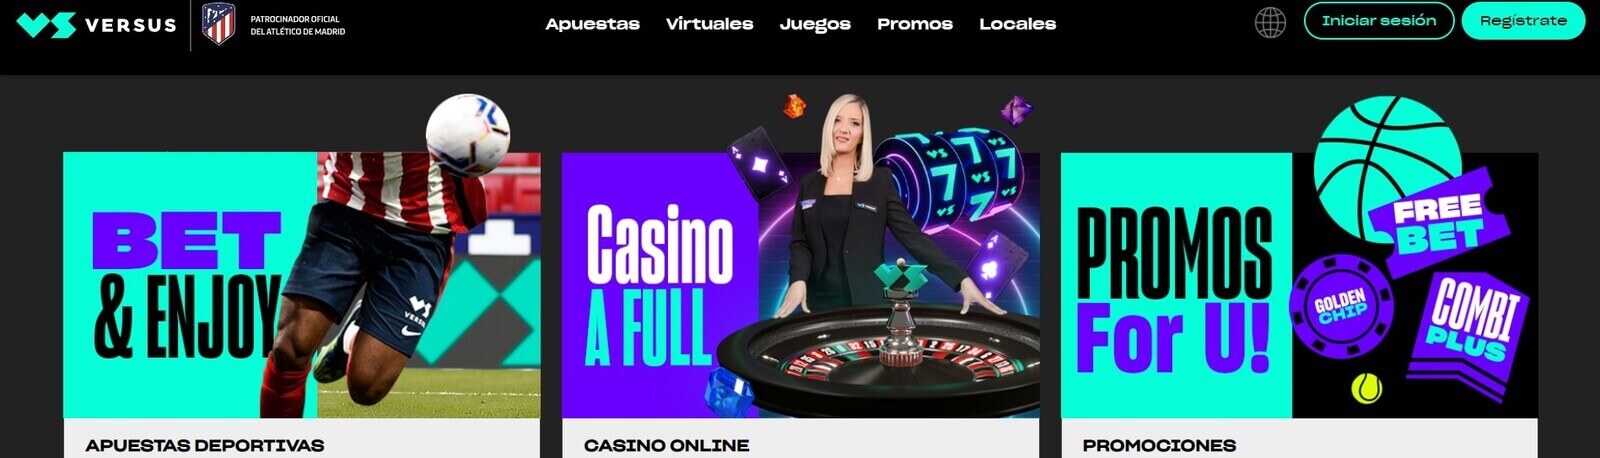 Versus Casino online con HiPay en España